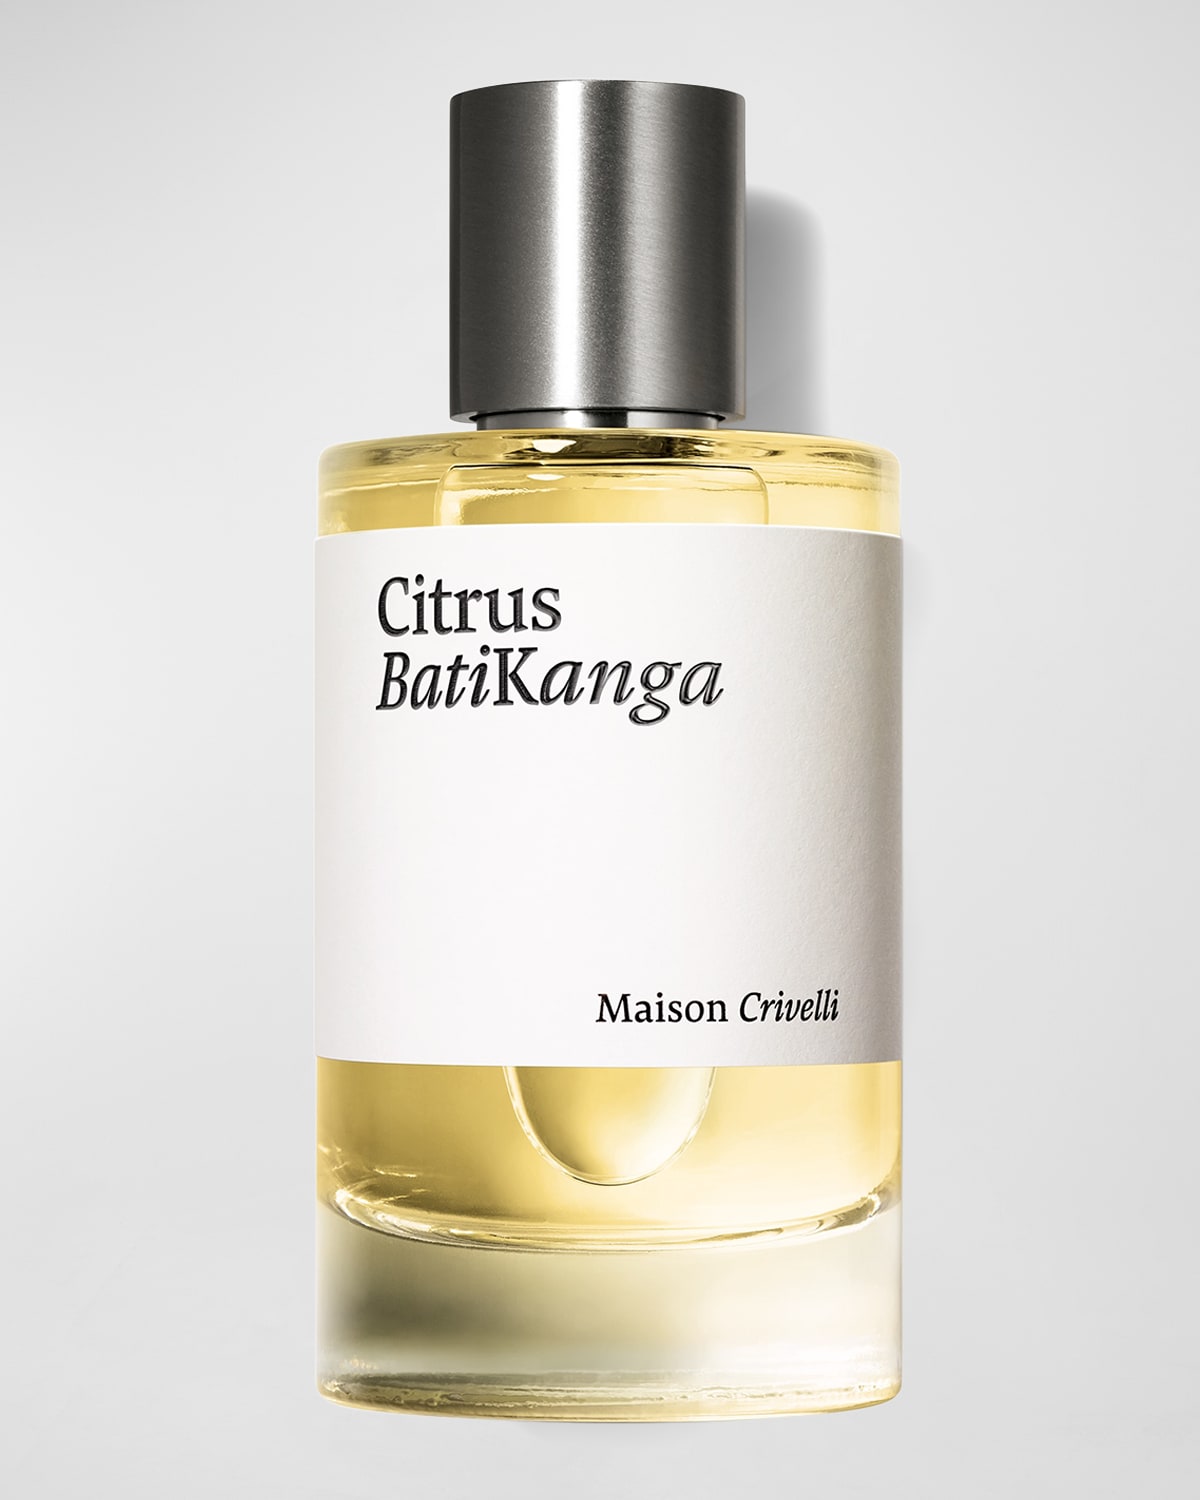 Maison Crivelli Citrus Batikanga Eau de Parfum, 3.4 oz.